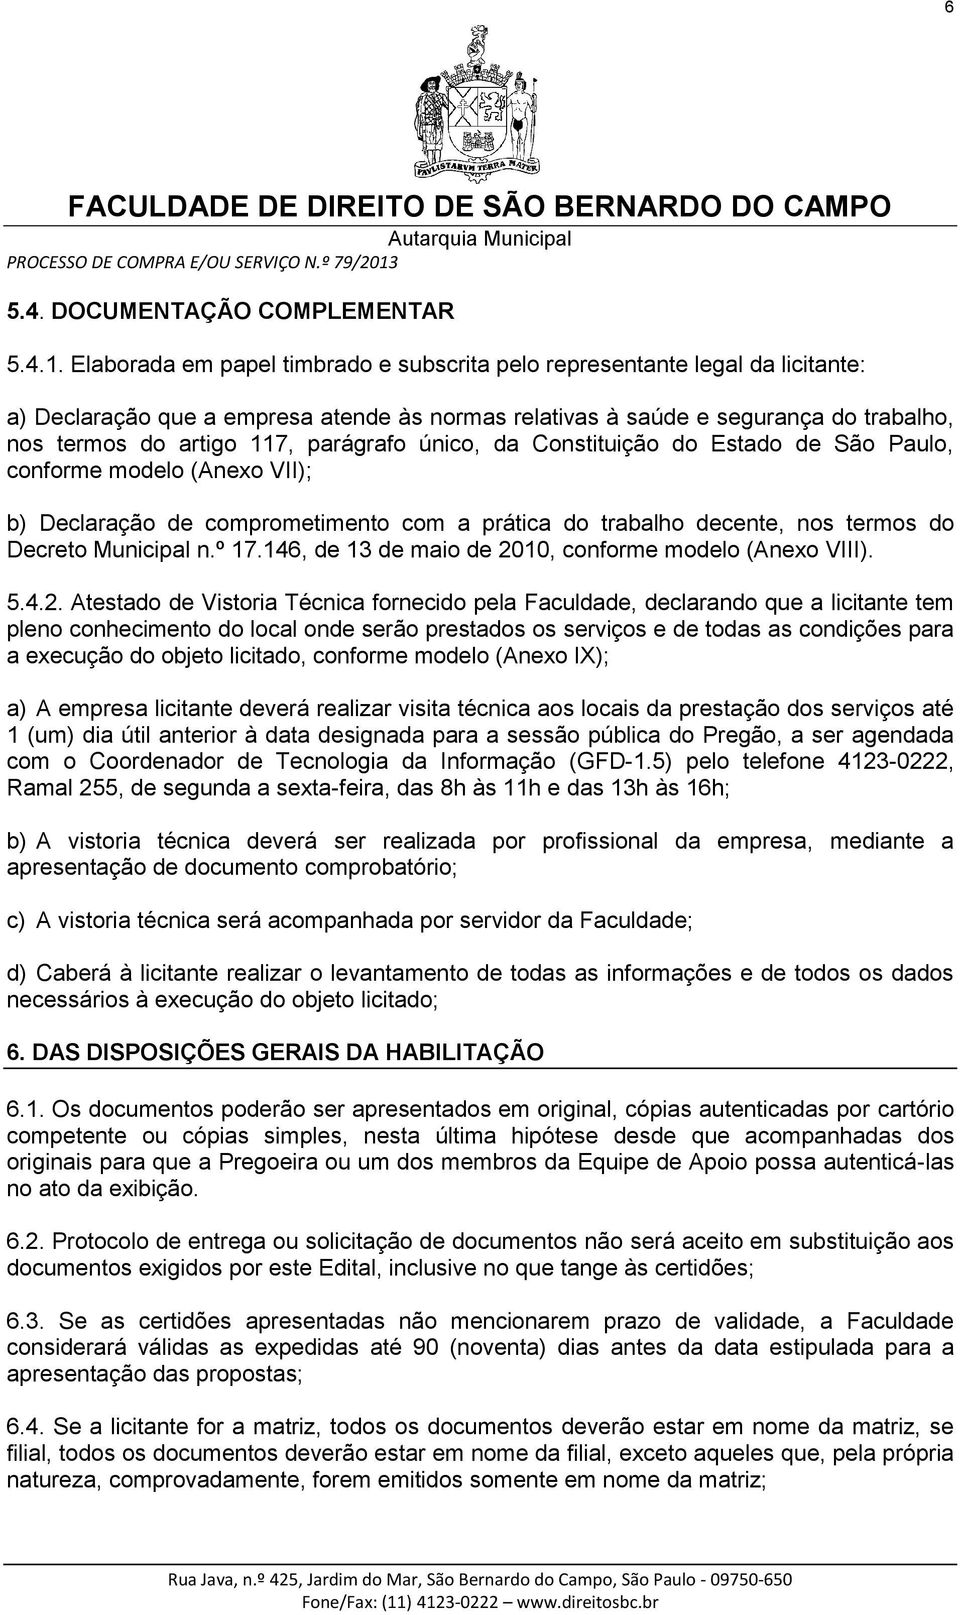 parágrafo único, da Constituição do Estado de São Paulo, conforme modelo (Anexo VII); b) Declaração de comprometimento com a prática do trabalho decente, nos termos do Decreto Municipal n.º 17.